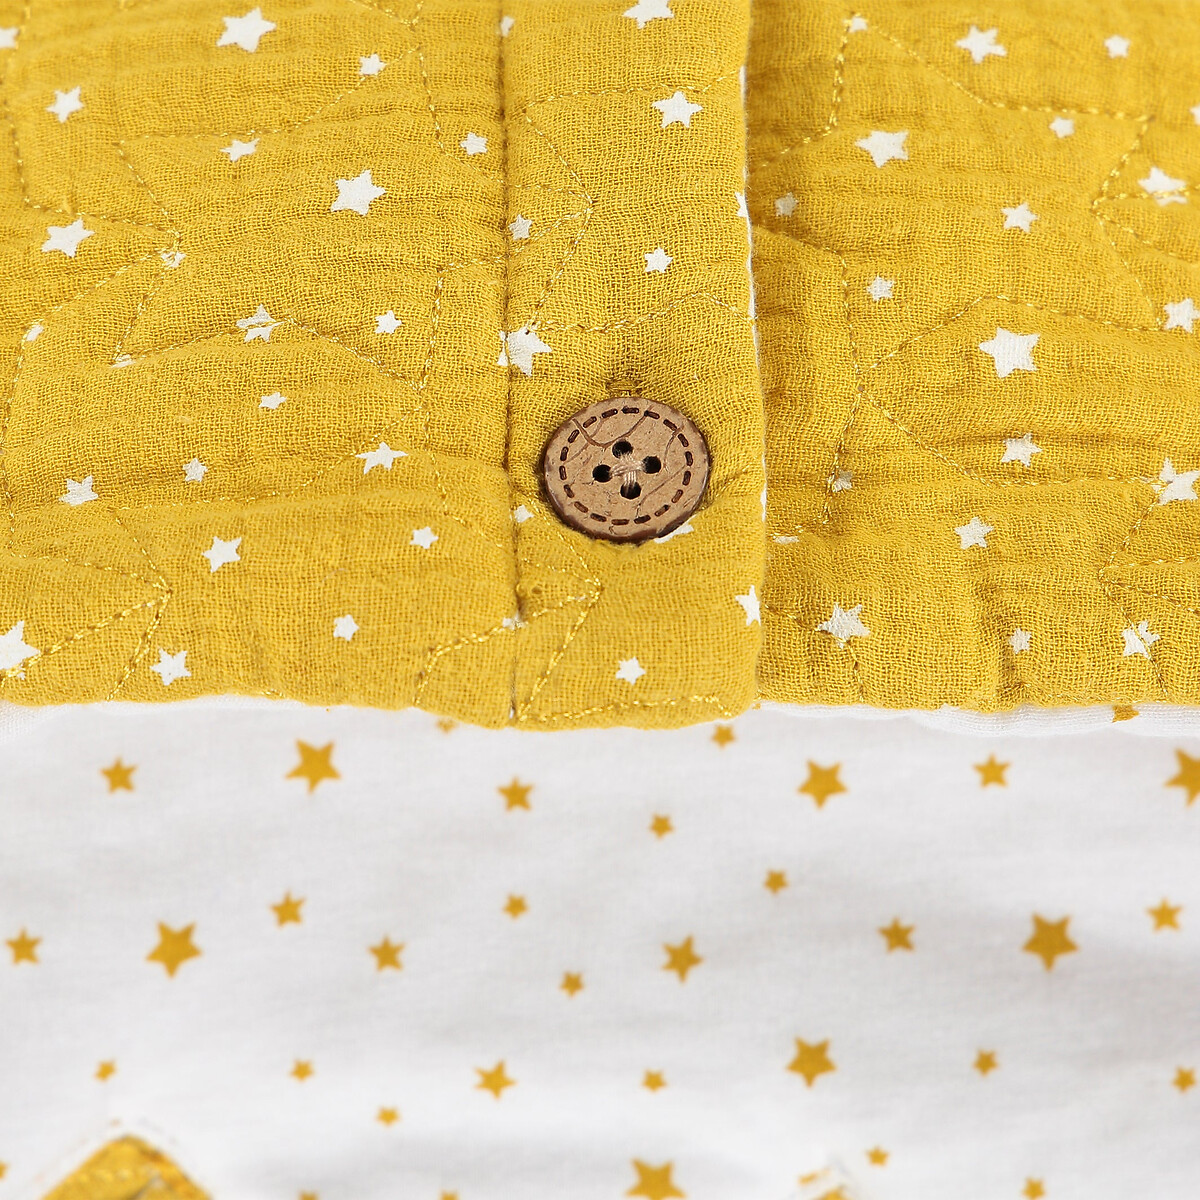 Конверт La Redoute Для новорожденного с капюшоном с рисунком из газовой хлопчатобумажной ткани единый размер желтый - фото 4